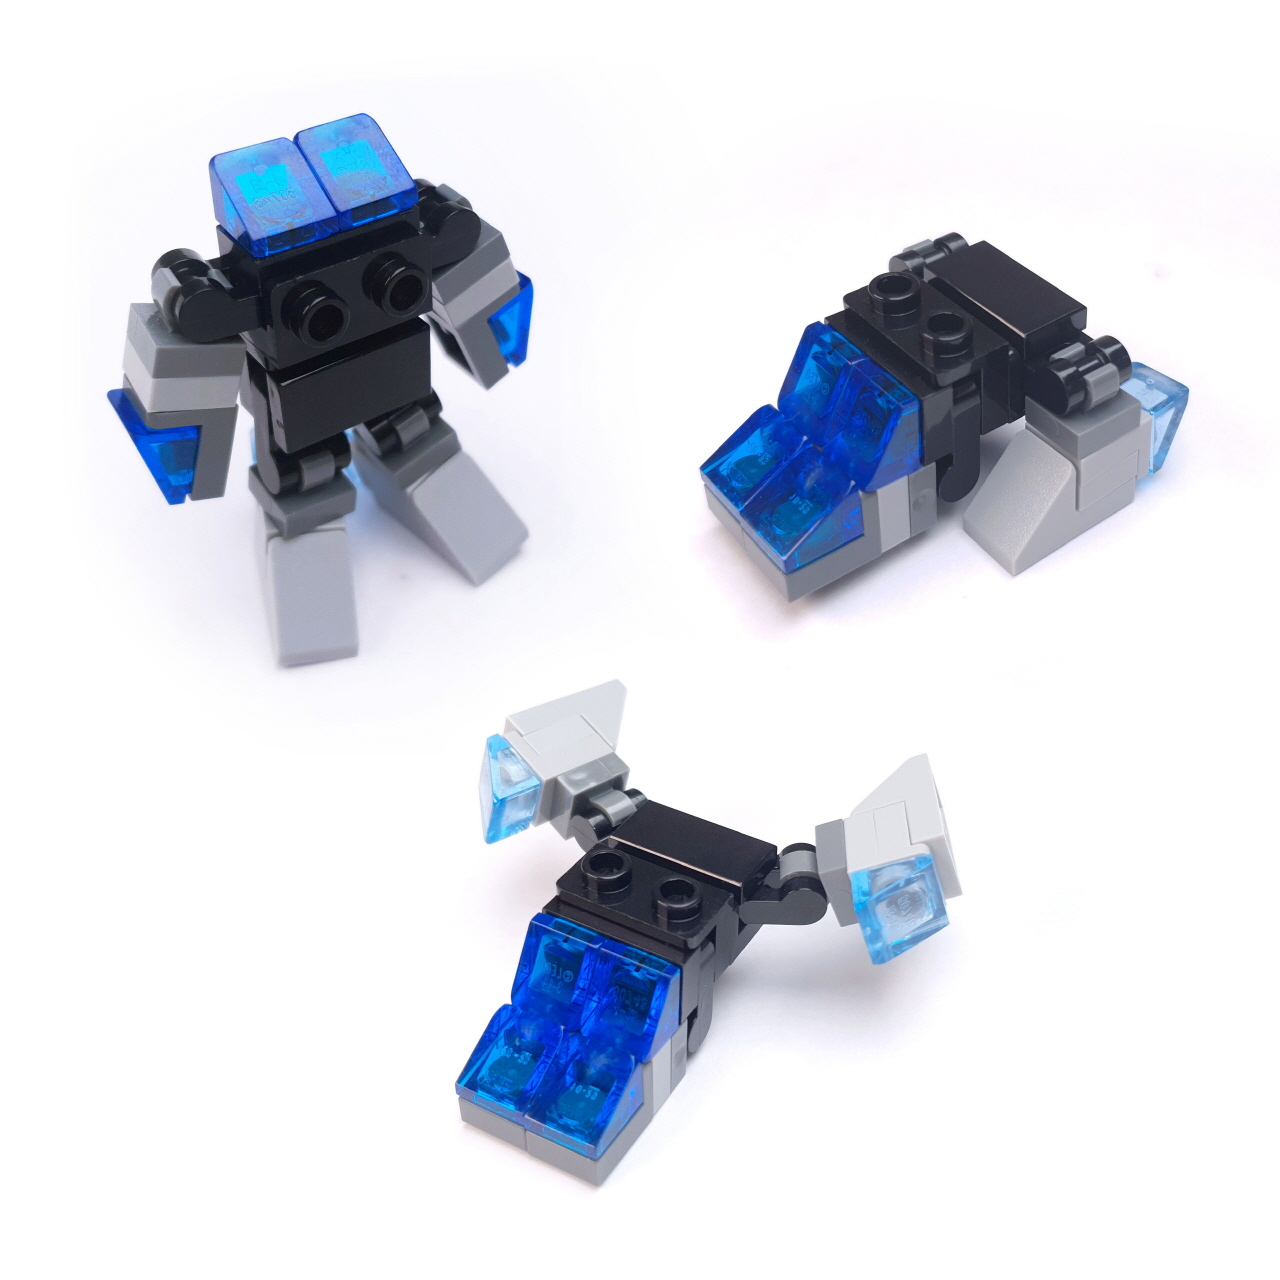 ブルーアイズ - レゴミニ3段変形ロボ
 3 - 変身,変身ロボ,レゴ変身ロボ